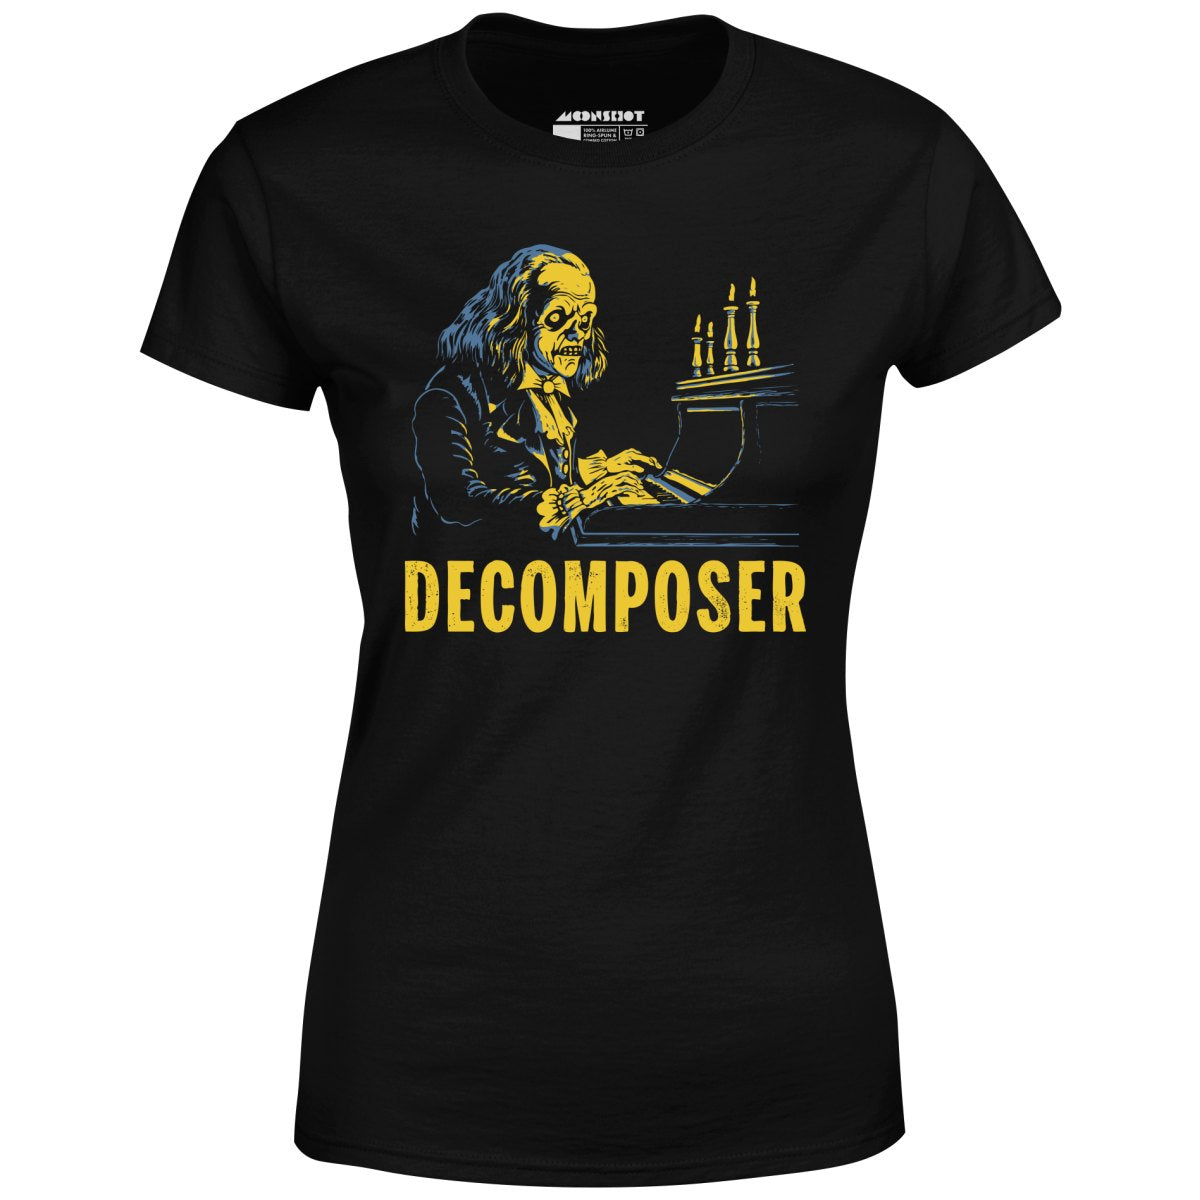 Decomposer - Women's T-Shirt